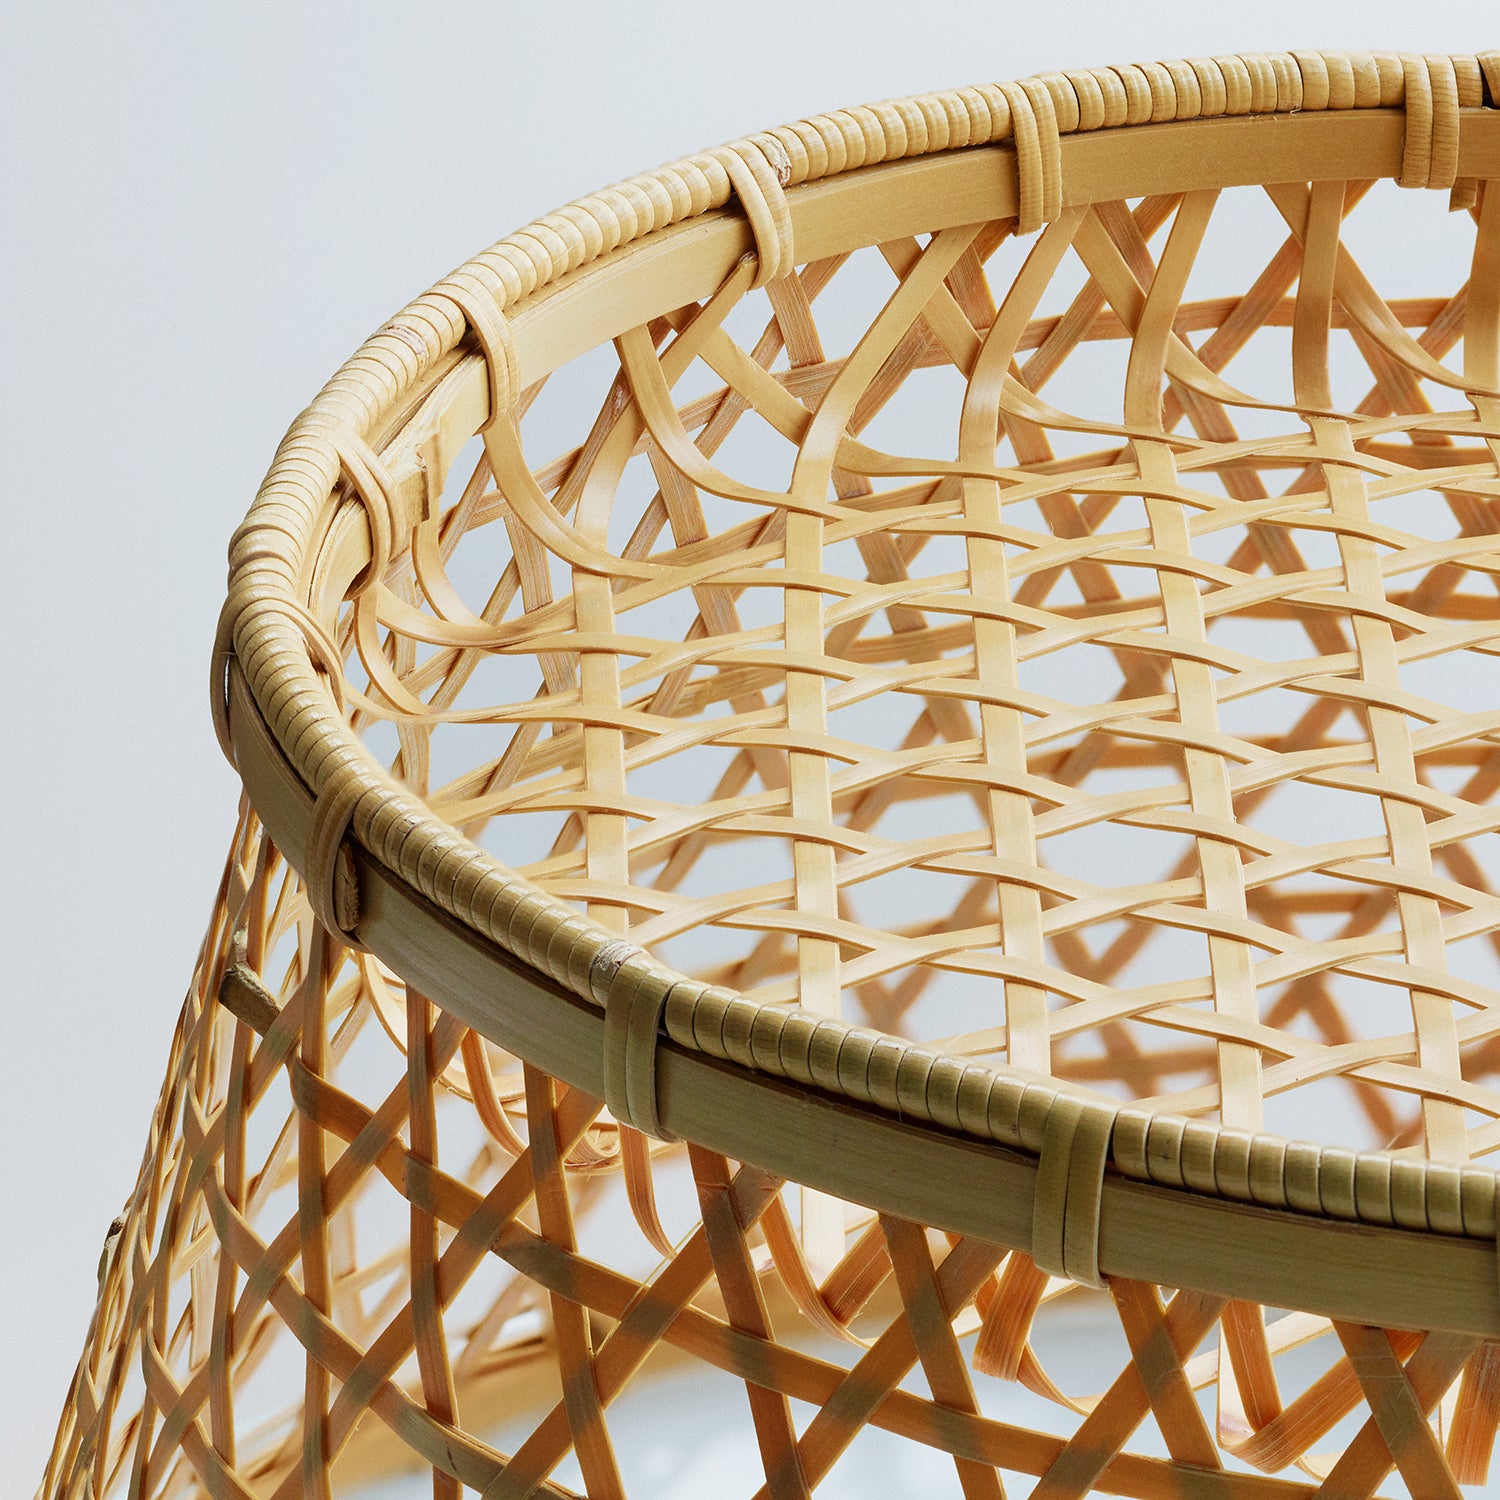 KASANE Bamboo Basket